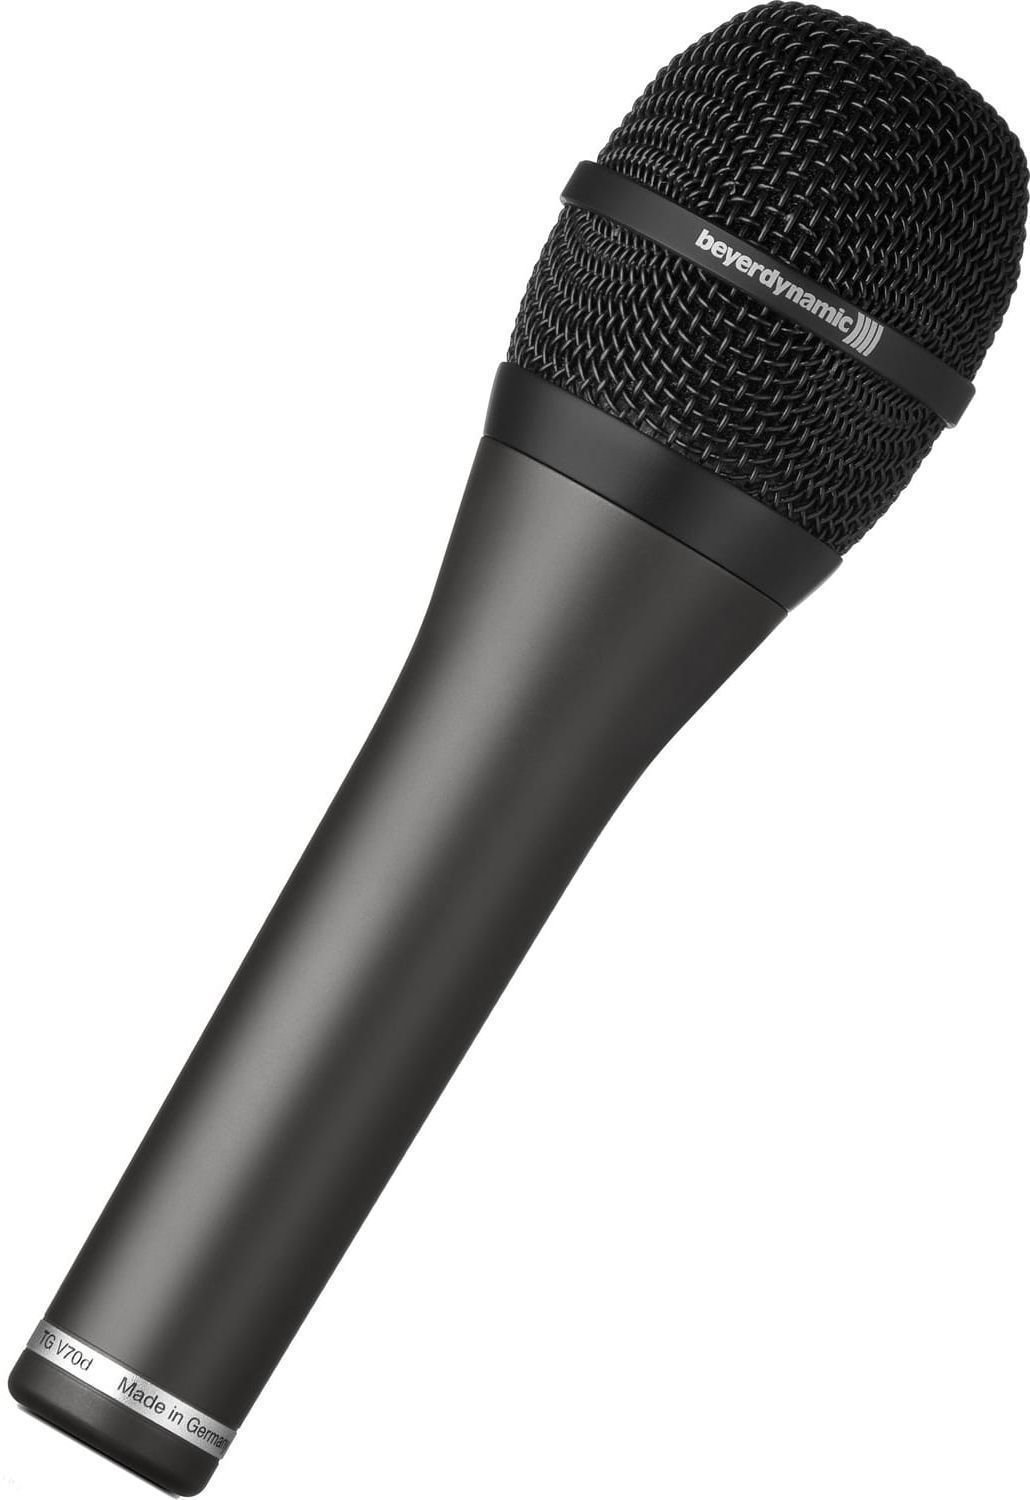 Vocal Dynamic Microphone Beyerdynamic TG V70 s Vocal Dynamic Microphone (Just unboxed)